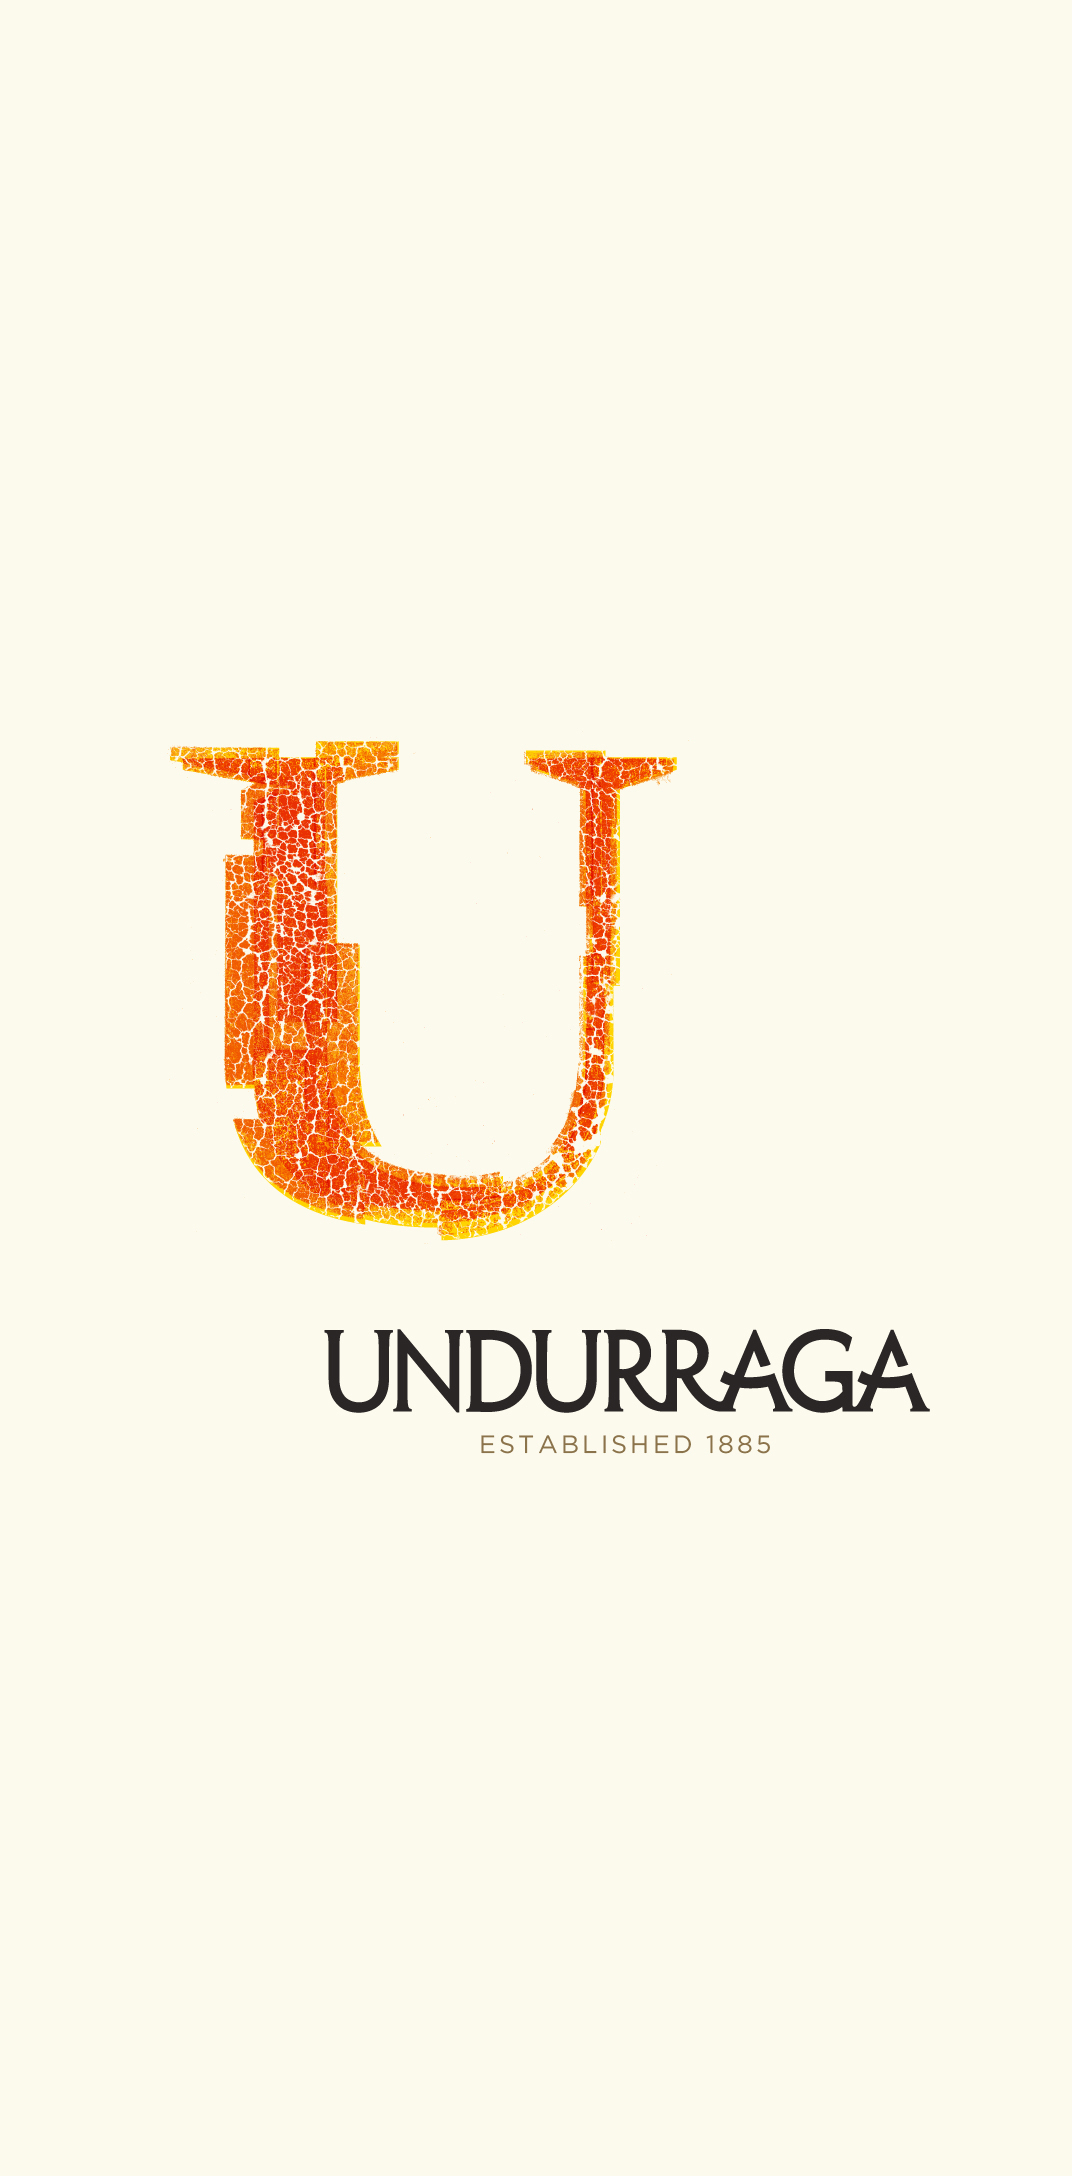 Undurraga Logo Design